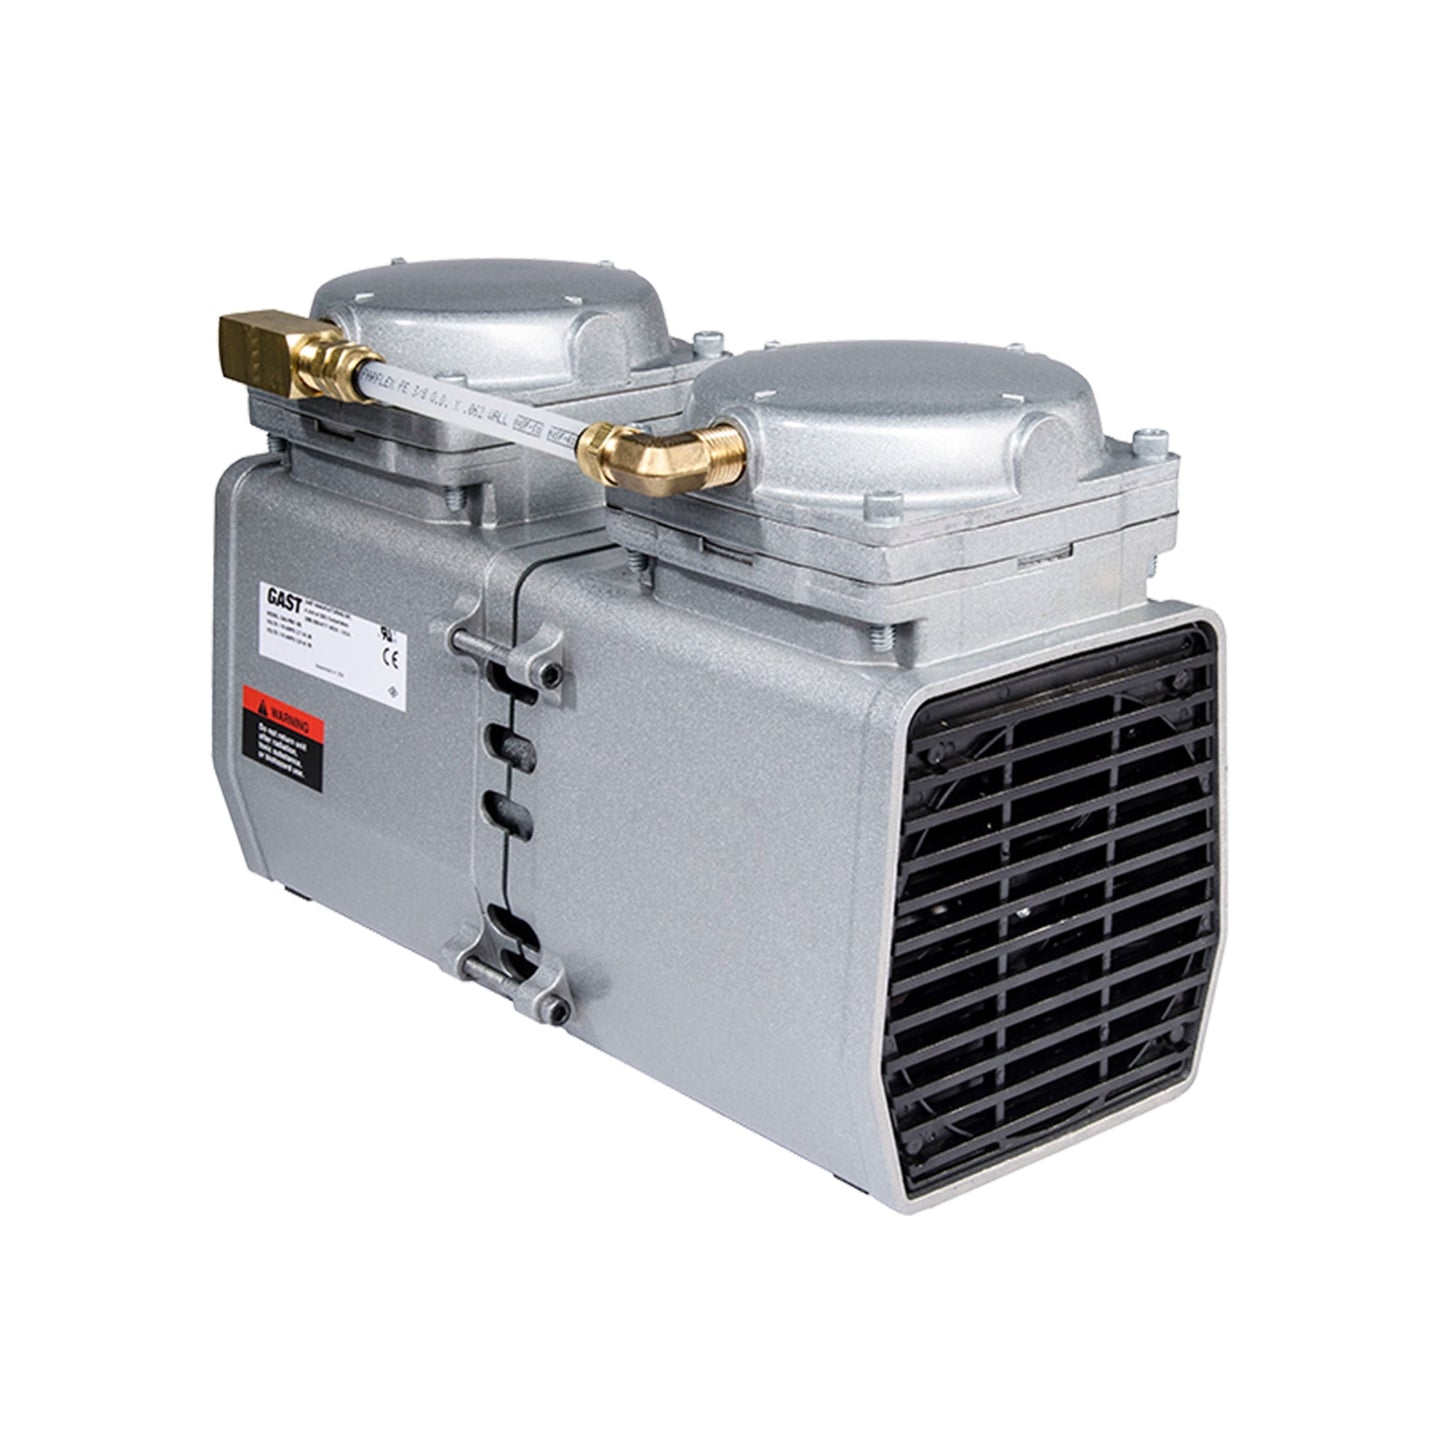 Gast DAA-P501-EB Air Compressor / Vacuum Pump